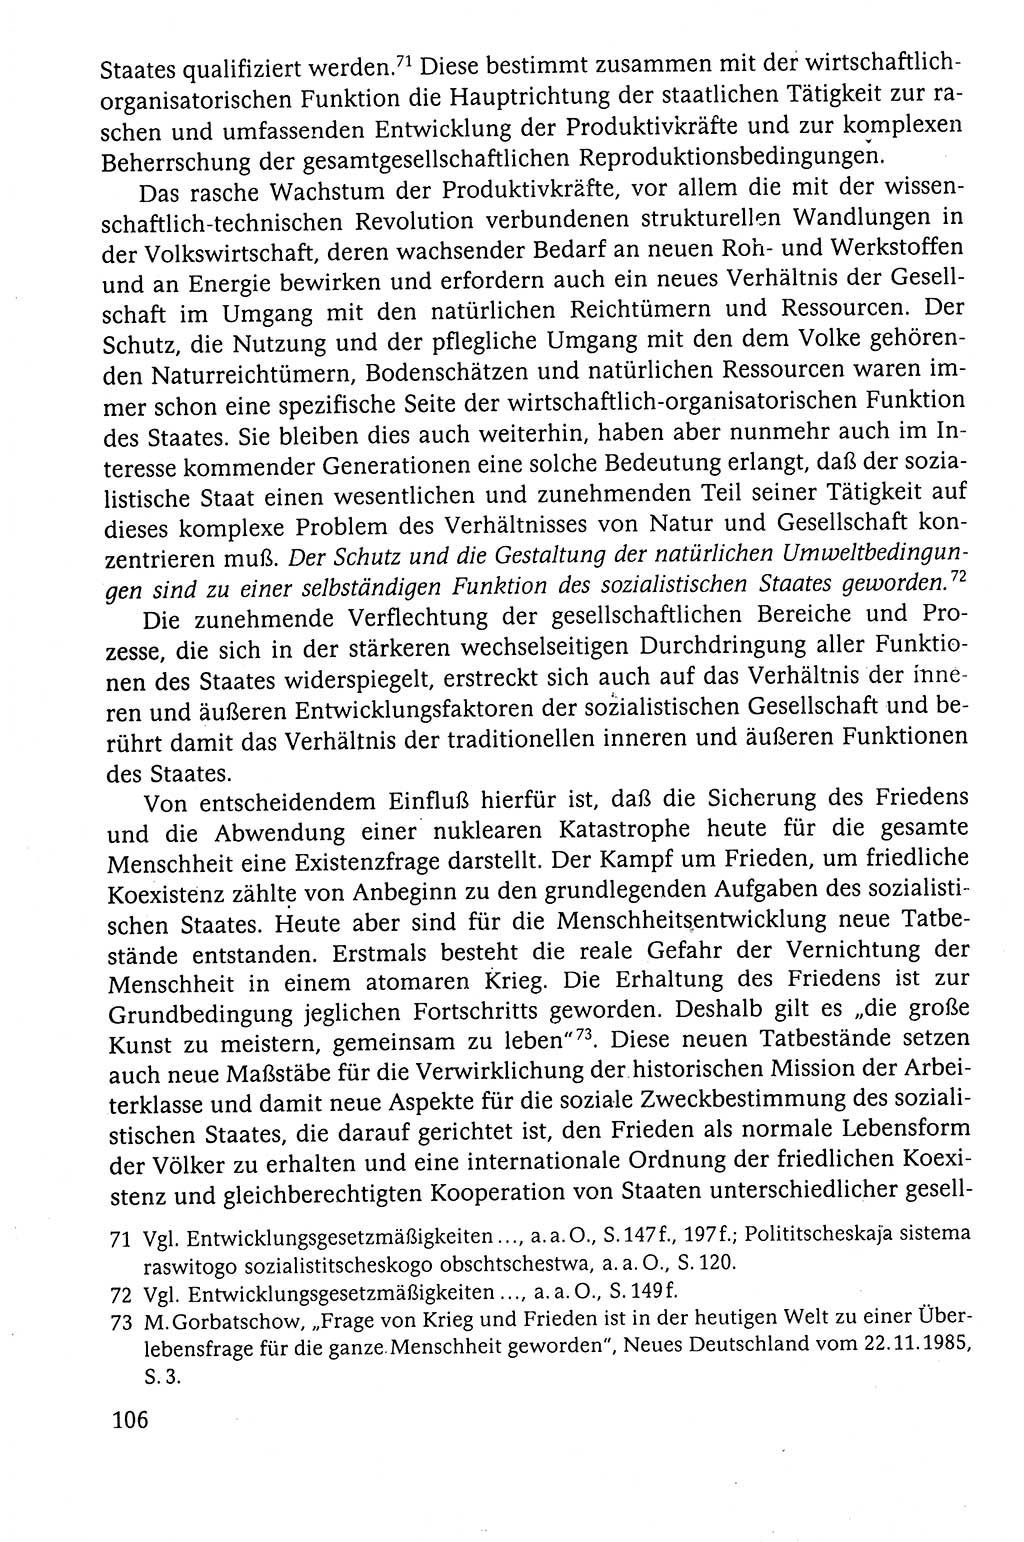 Der Staat im politischen System der DDR (Deutsche Demokratische Republik) 1986, Seite 106 (St. pol. Sys. DDR 1986, S. 106)